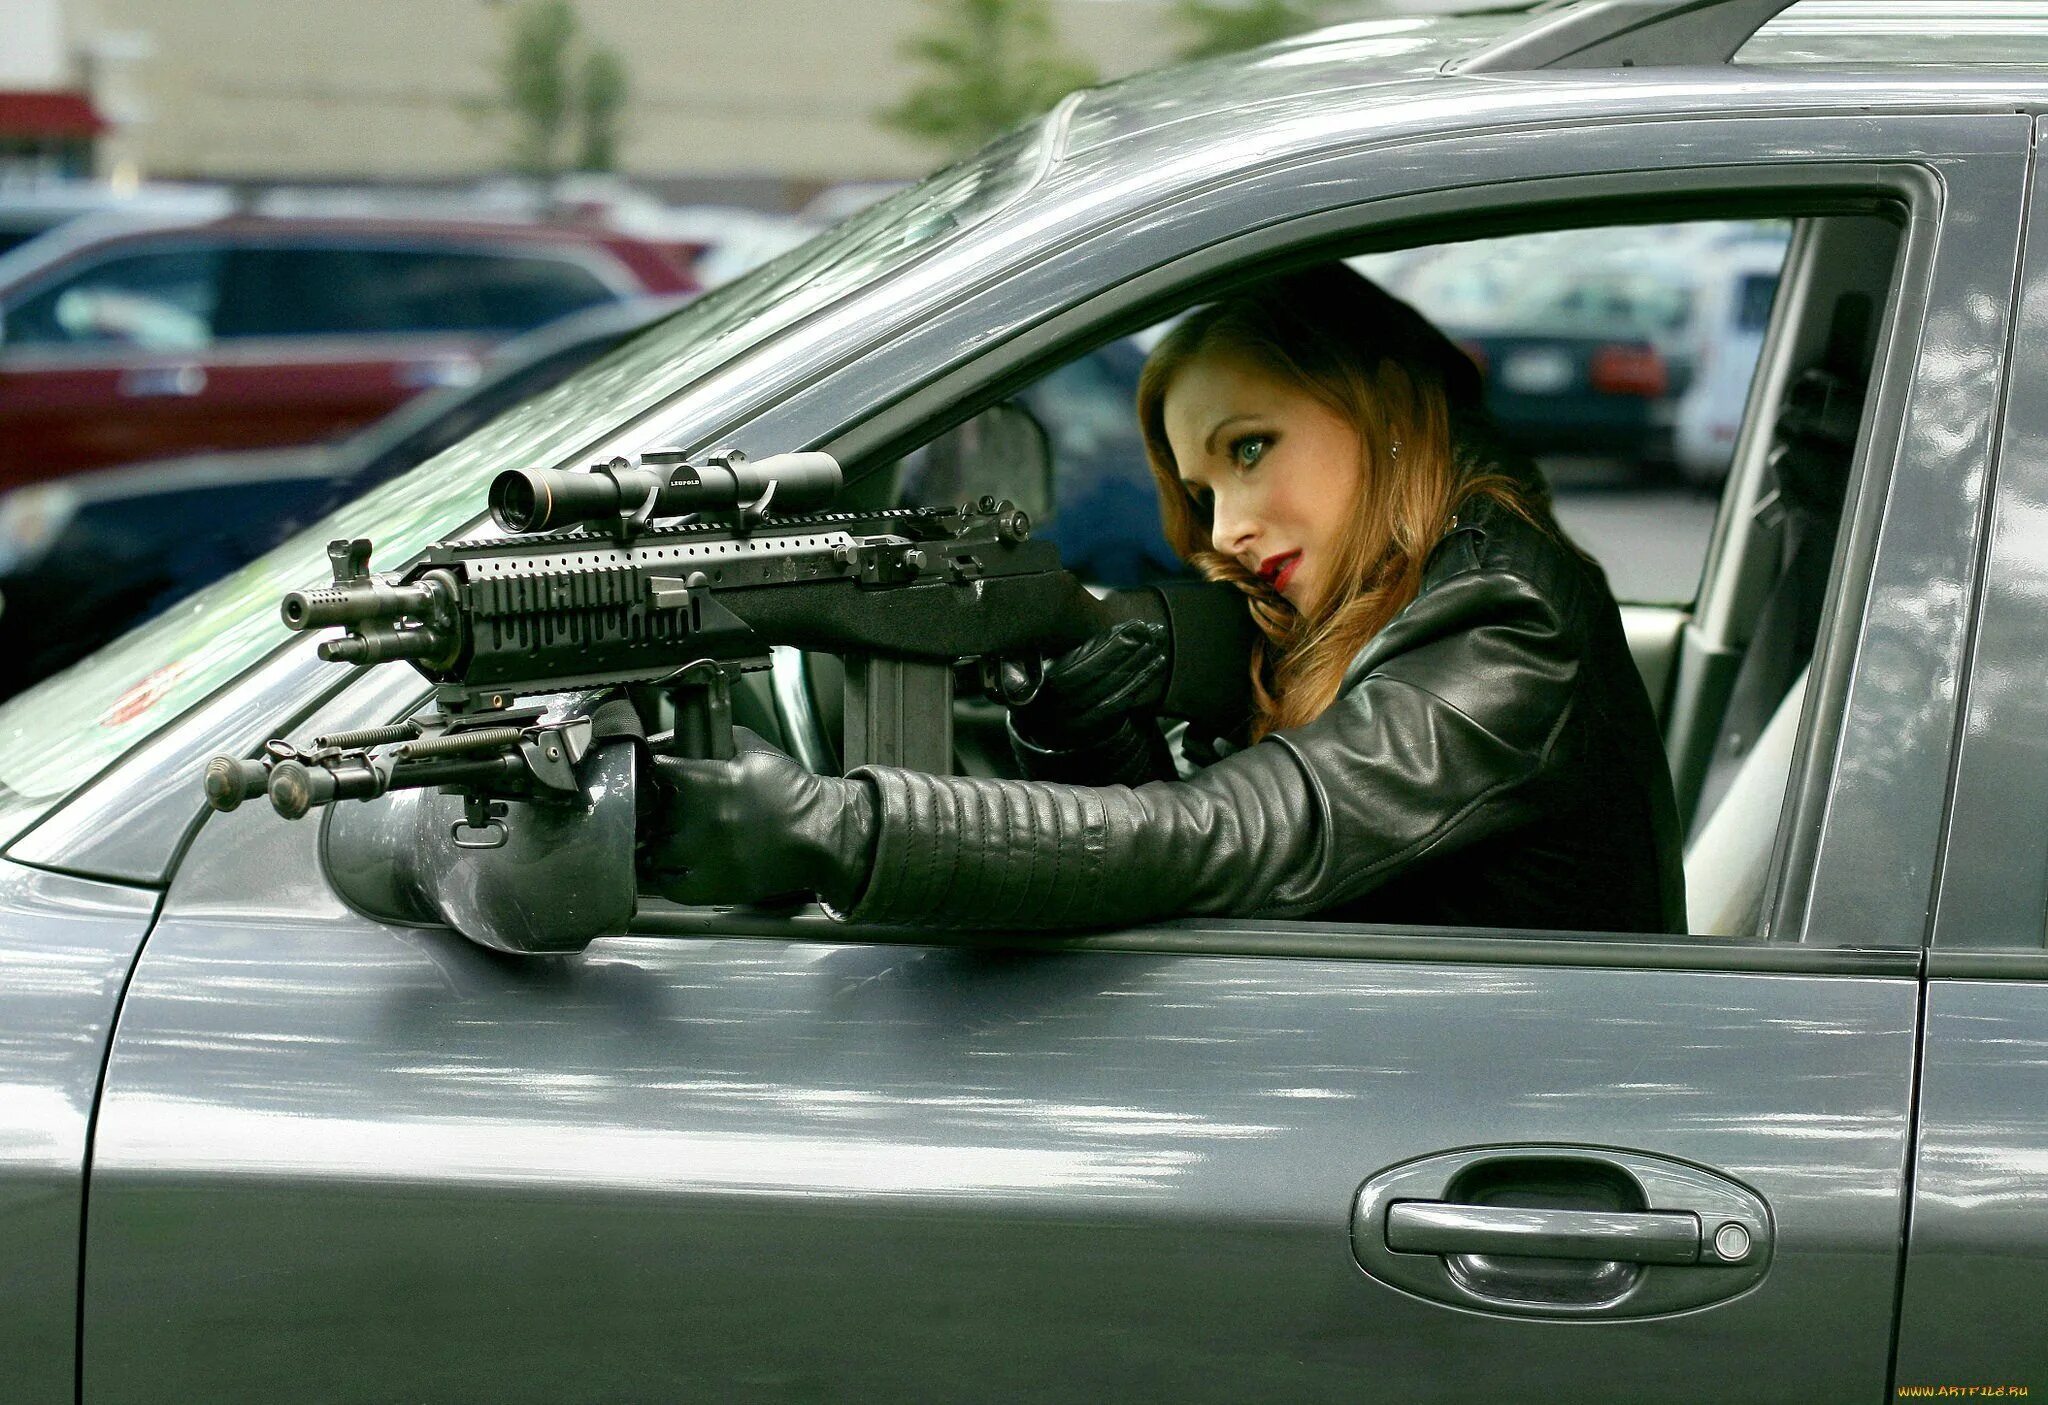 Машины едут и стреляют. Heather hitwoman. Девушка с оружием. Автомобиль с оружием. Девушка с пистолетом.